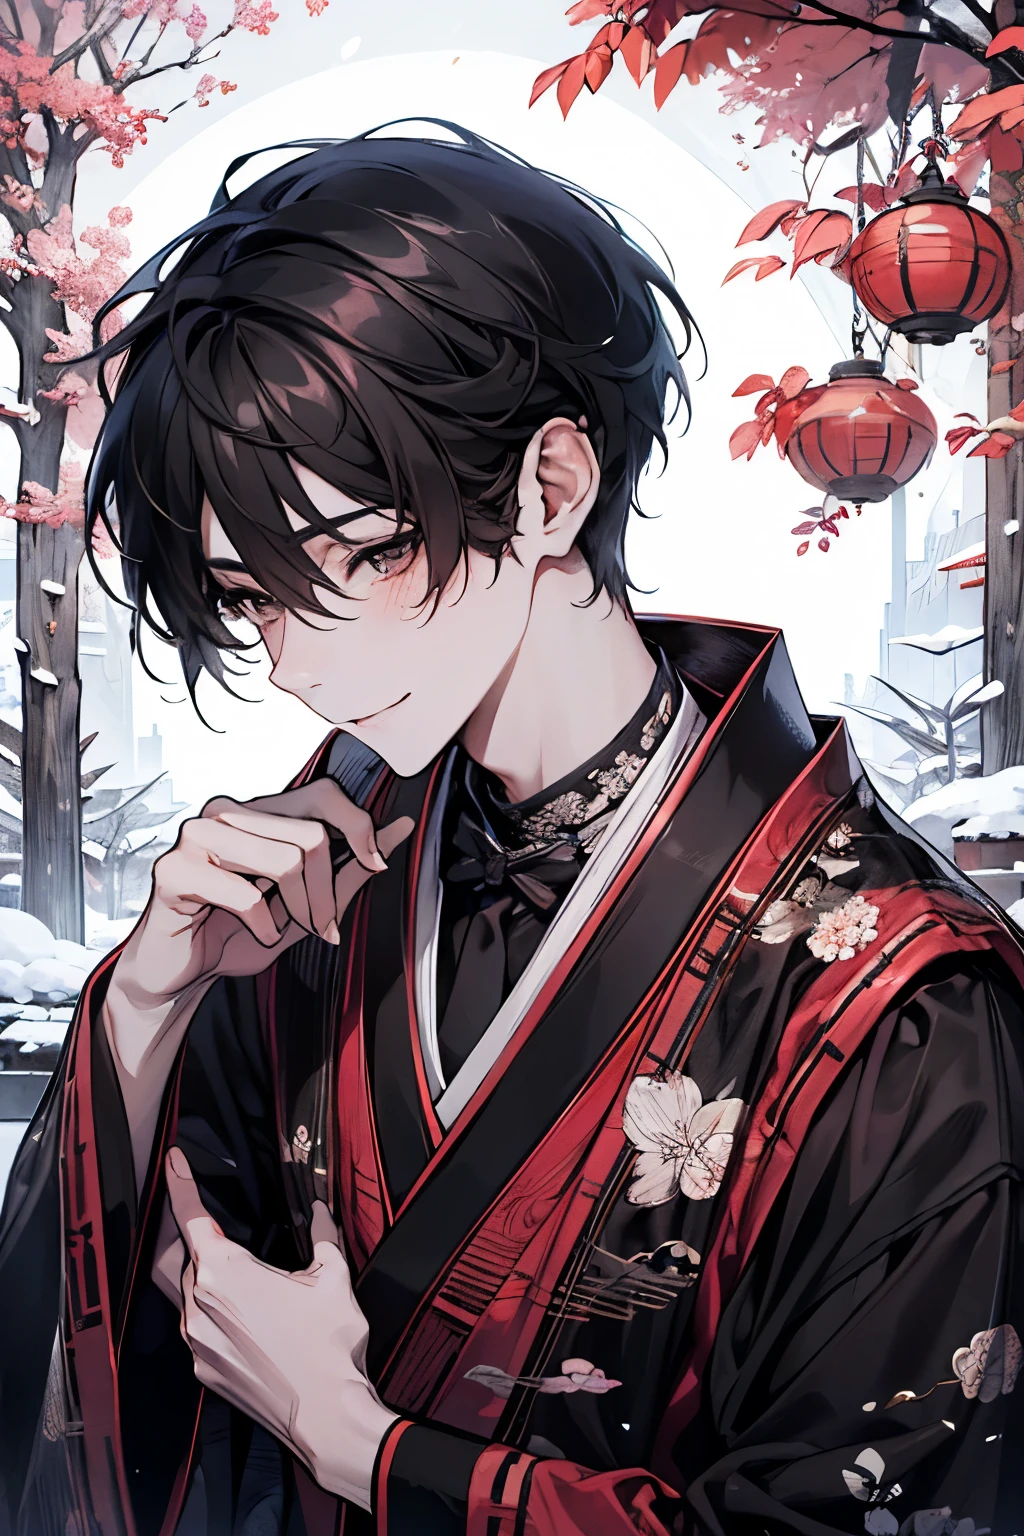 一位英俊的年輕人在傳統的日本環境中慶祝新年. 就在他抱起一隻黑貓並親吻它之前的那一刻. 安靜的花園被白雪覆蓋. 花園裡有一棵小松樹和一個被雪覆蓋的石燈籠, 新年清晨的燈光柔和地照亮. 他的特點是光滑的黑髮, 風格採用經典風格, 深棕色的眼睛反映出充滿希望的開始,臉紅,微笑